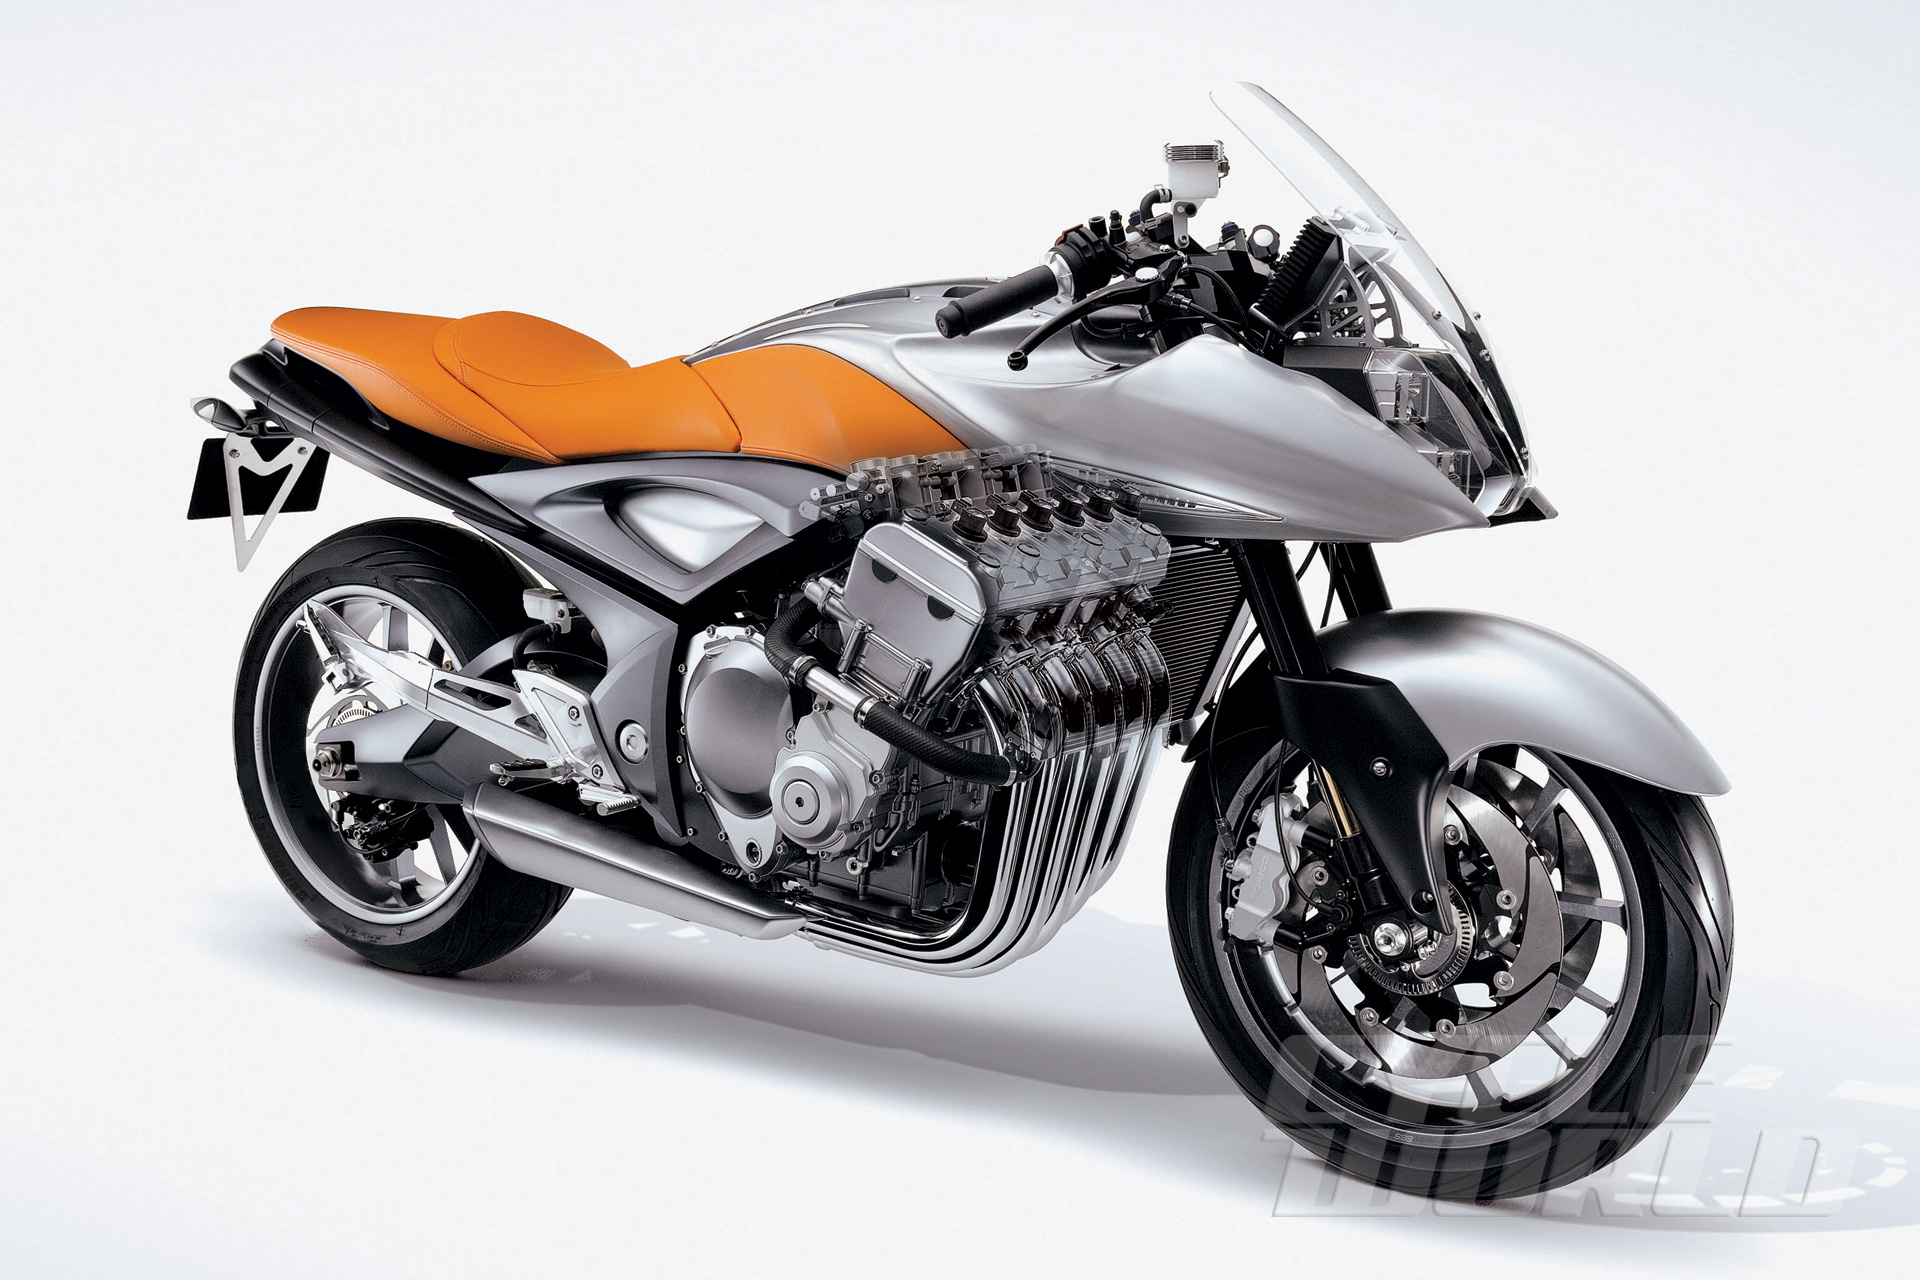 Suzuki Stratosphere Six-Cylinder Concept Motorcycle